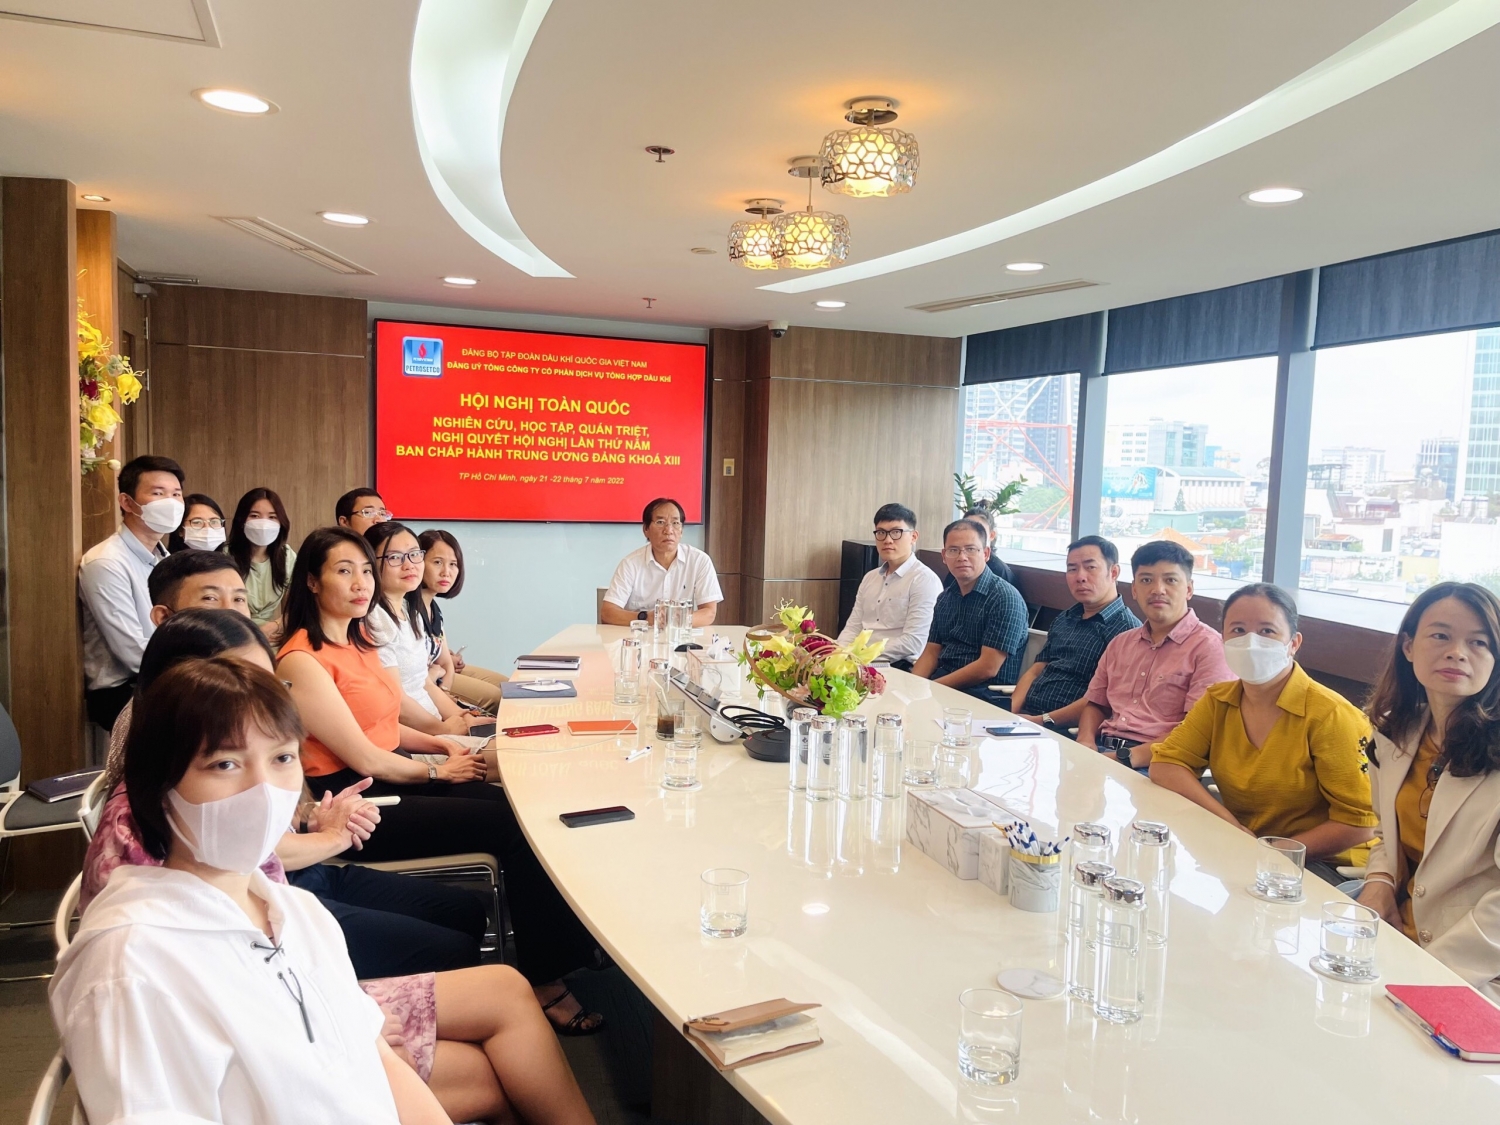 Đảng ủy Tập đoàn Dầu khí Quốc gia Việt Nam tổ chức học tập quán triệt